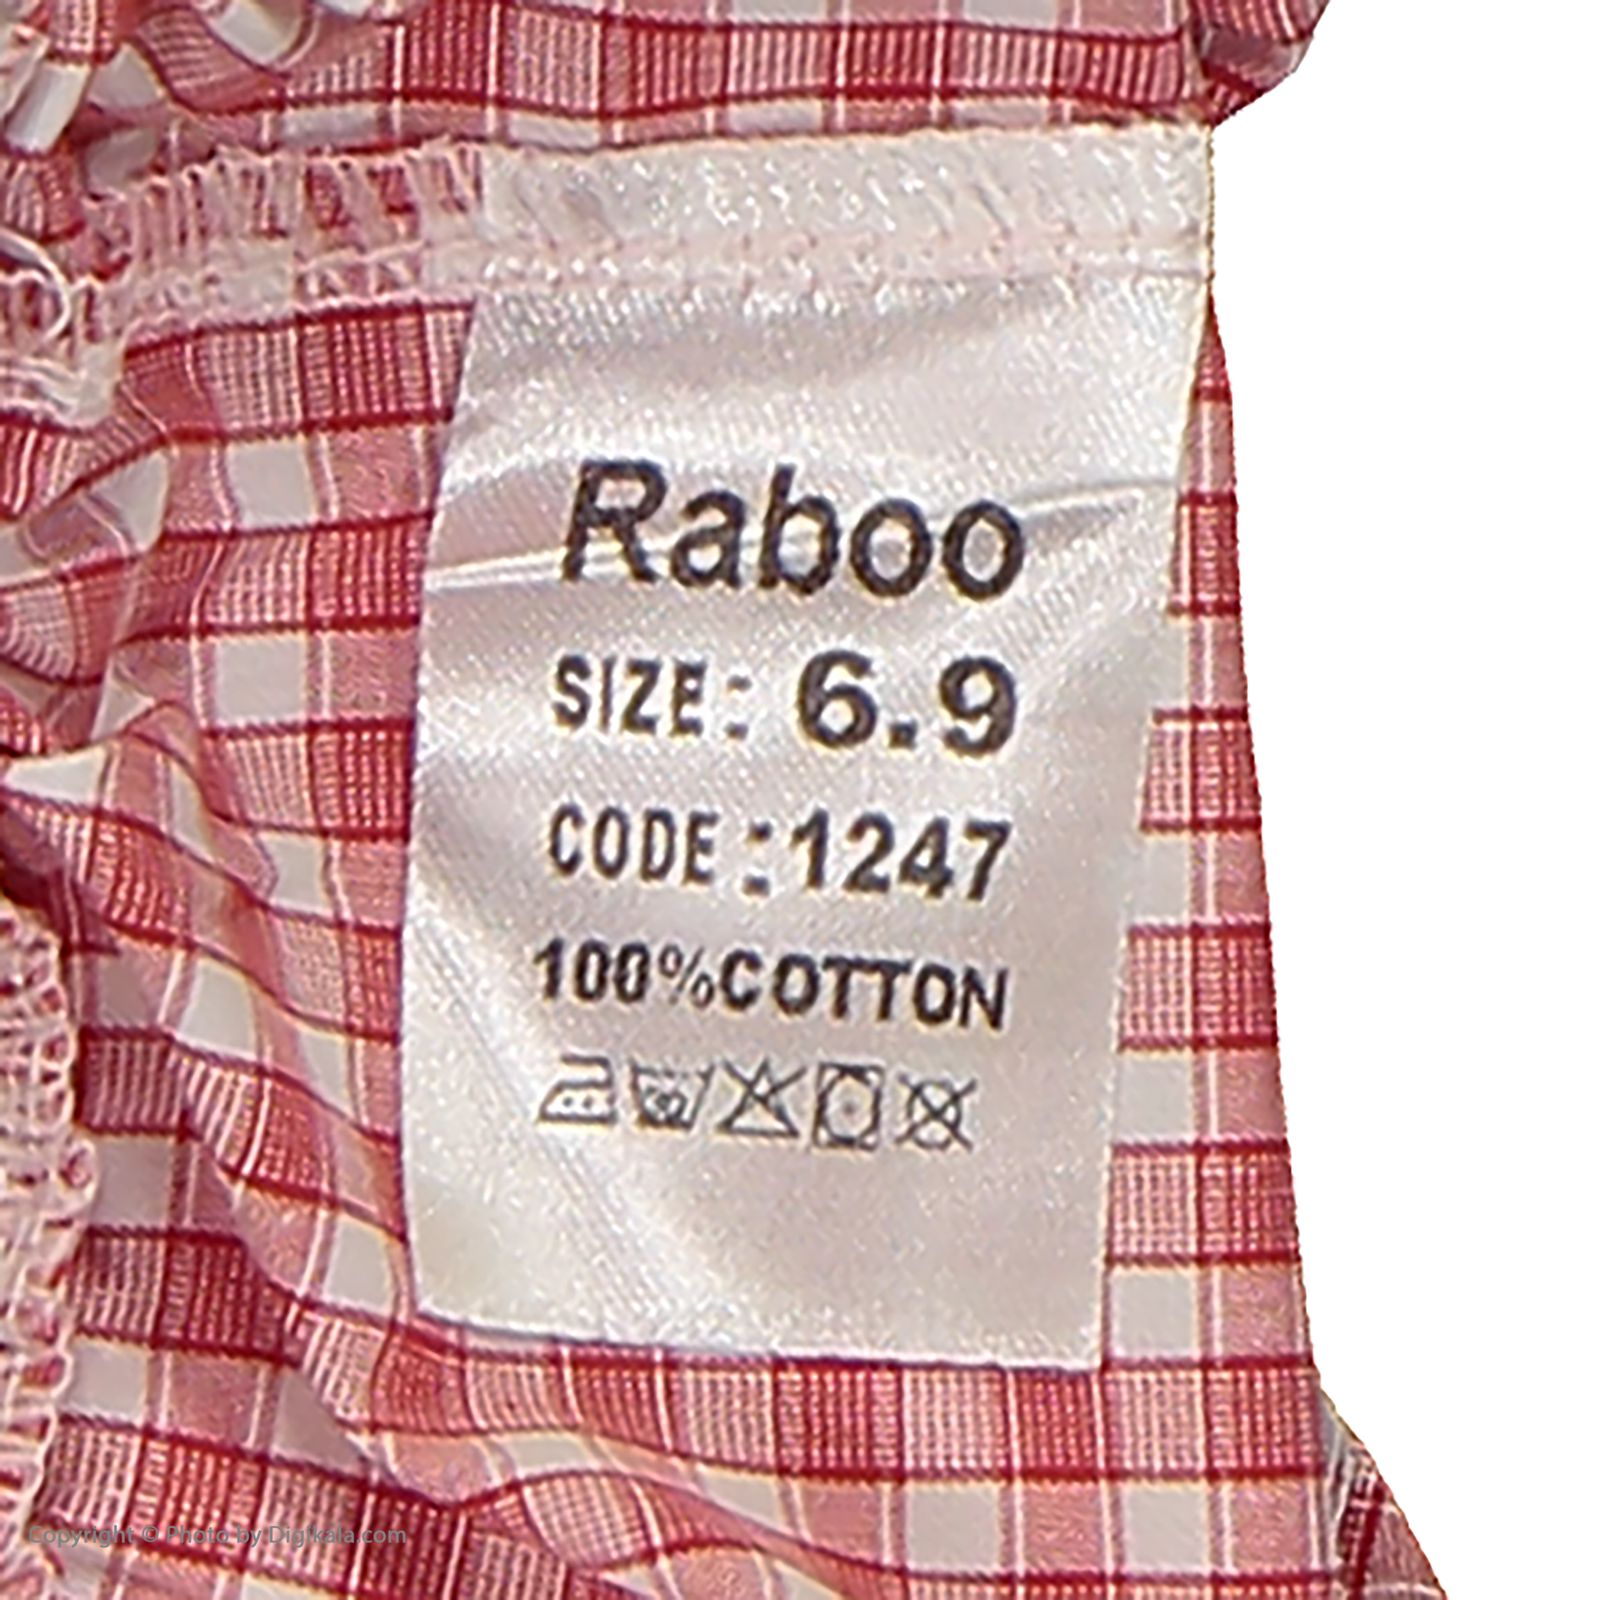 ست تی شرت و شلوارک دخترانه رابو مدل 2051126-01 -  - 8